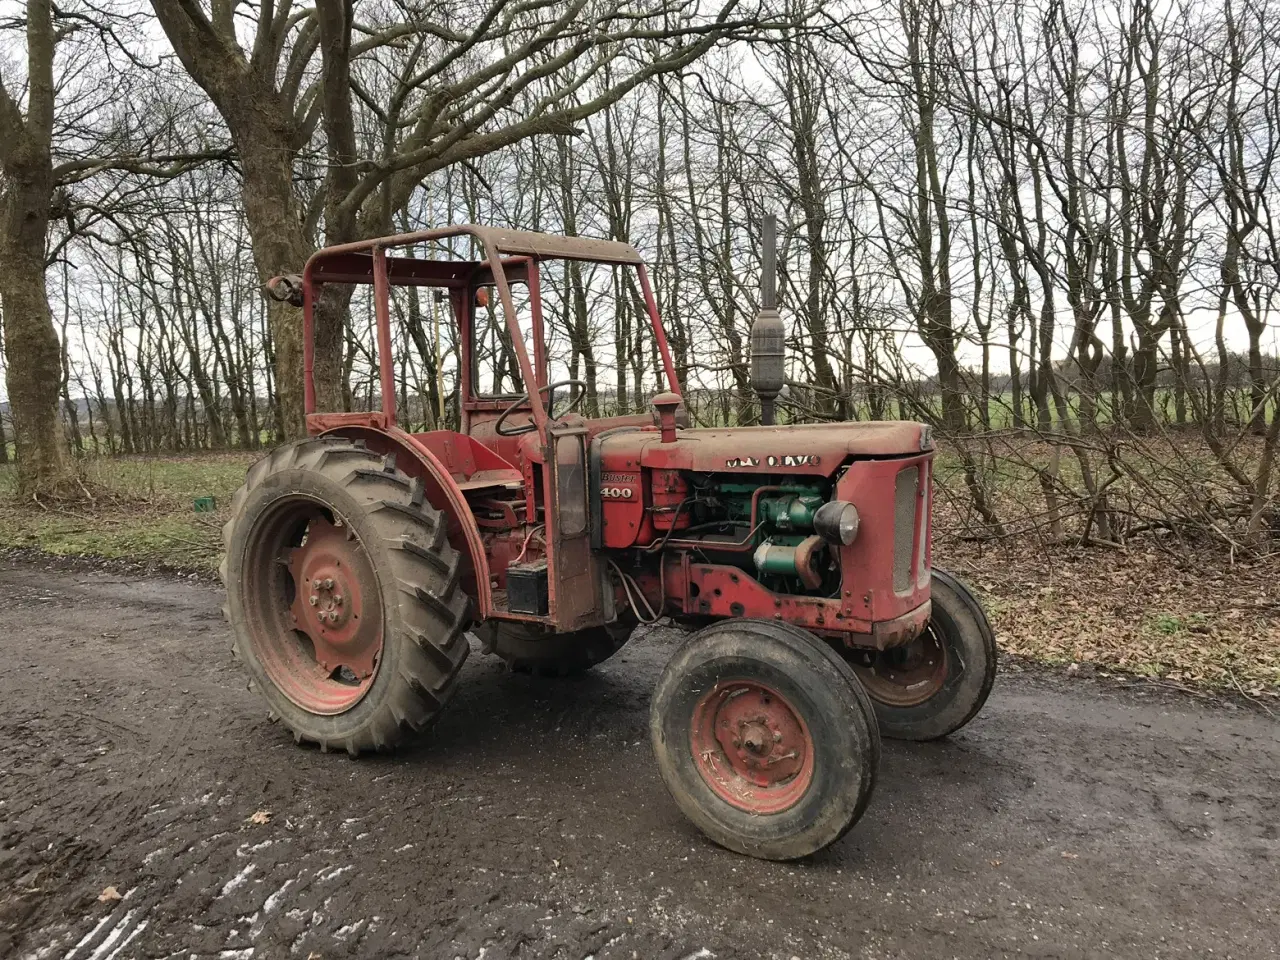 Billede 2 - Traktor til hobbybrug